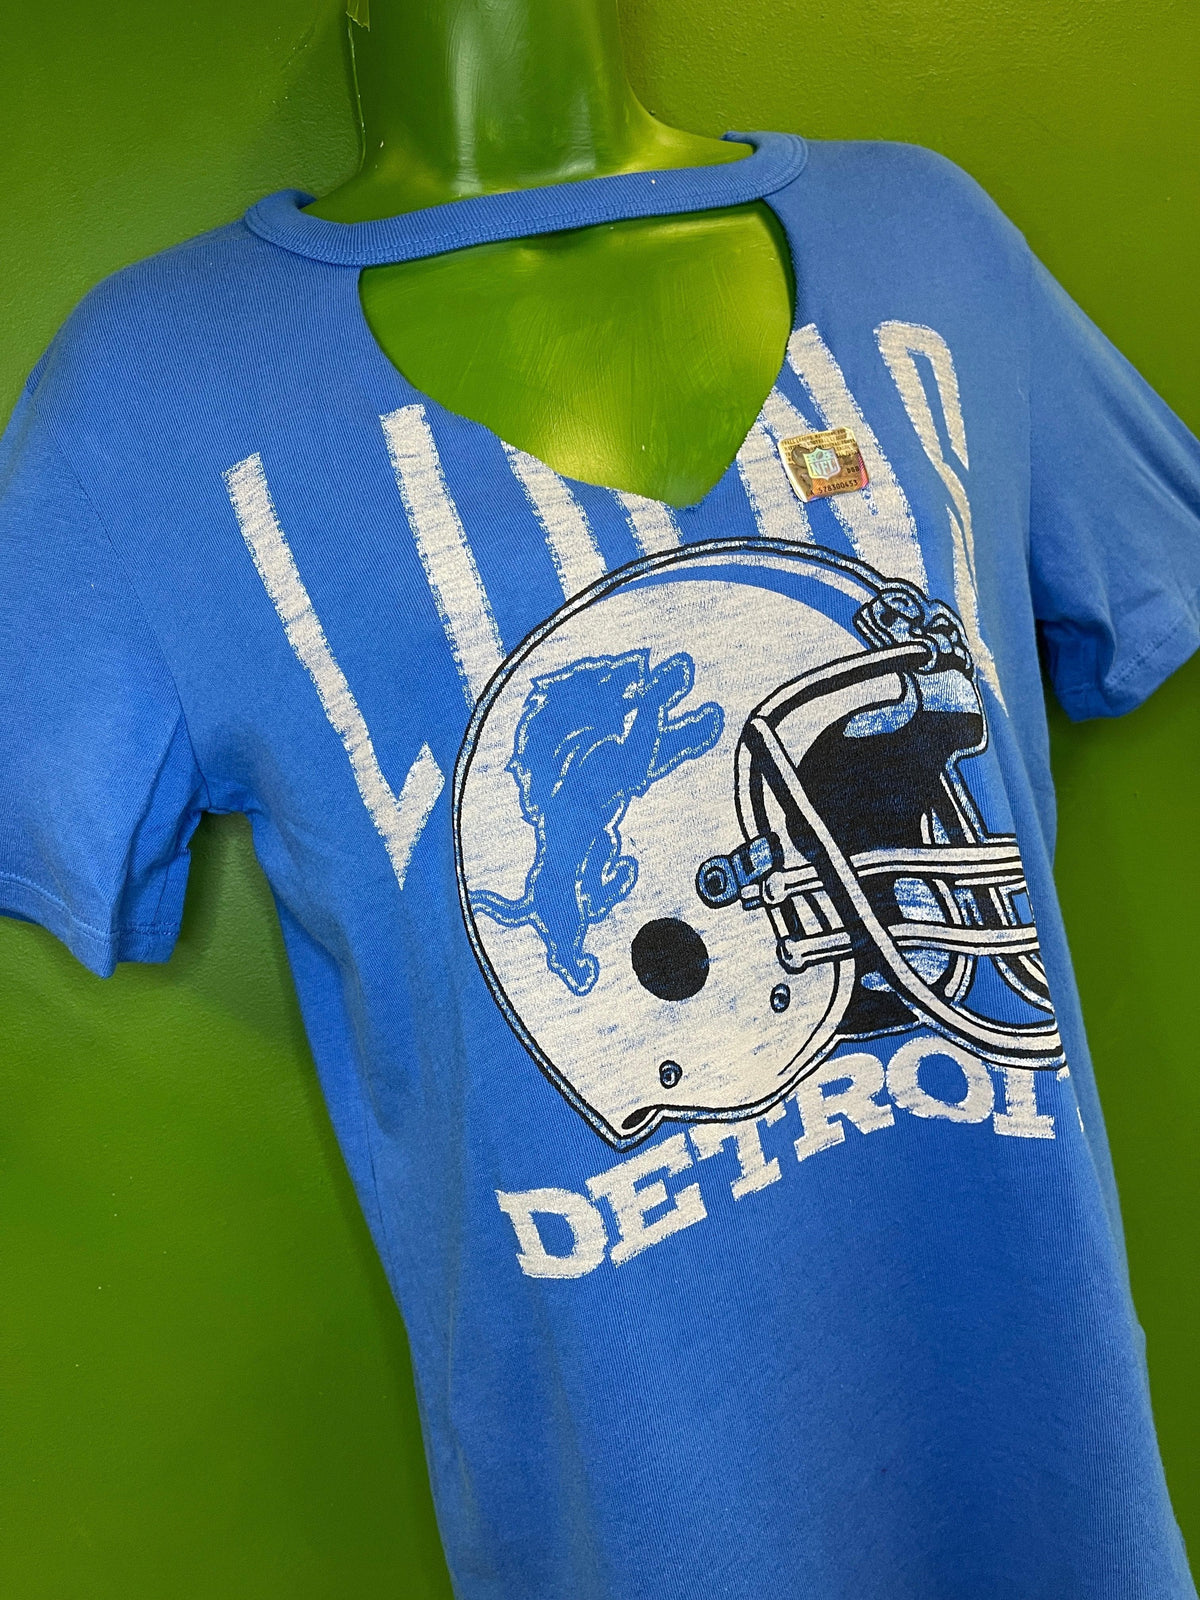 NFL Detroit Lions Junk Food Cut Out Fashion V-Neck T-Shirt Women's X-Large NWT